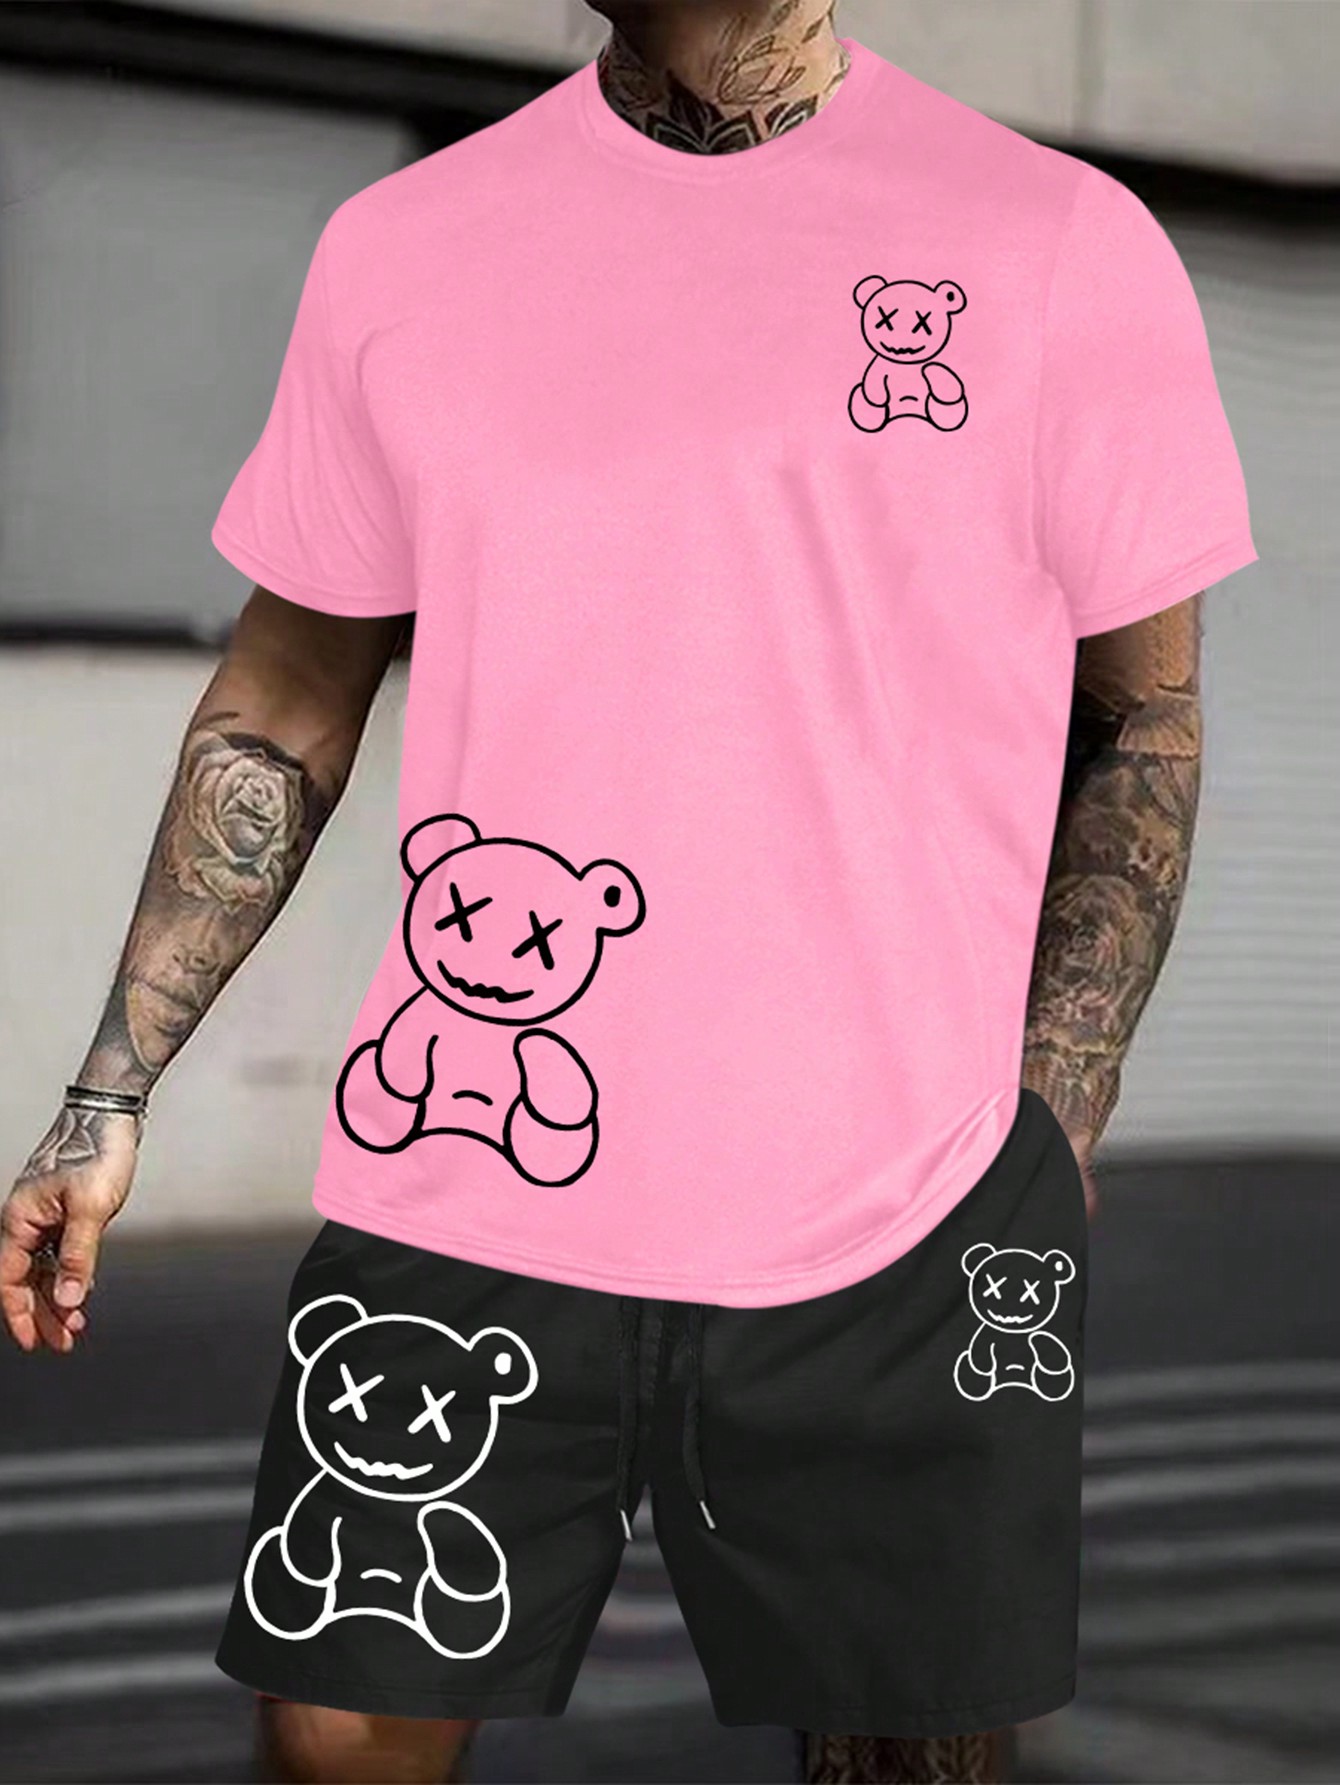 Мужская футболка с короткими рукавами и шорты с принтом мультяшного медведя Manfinity EMRG Plus, многоцветный